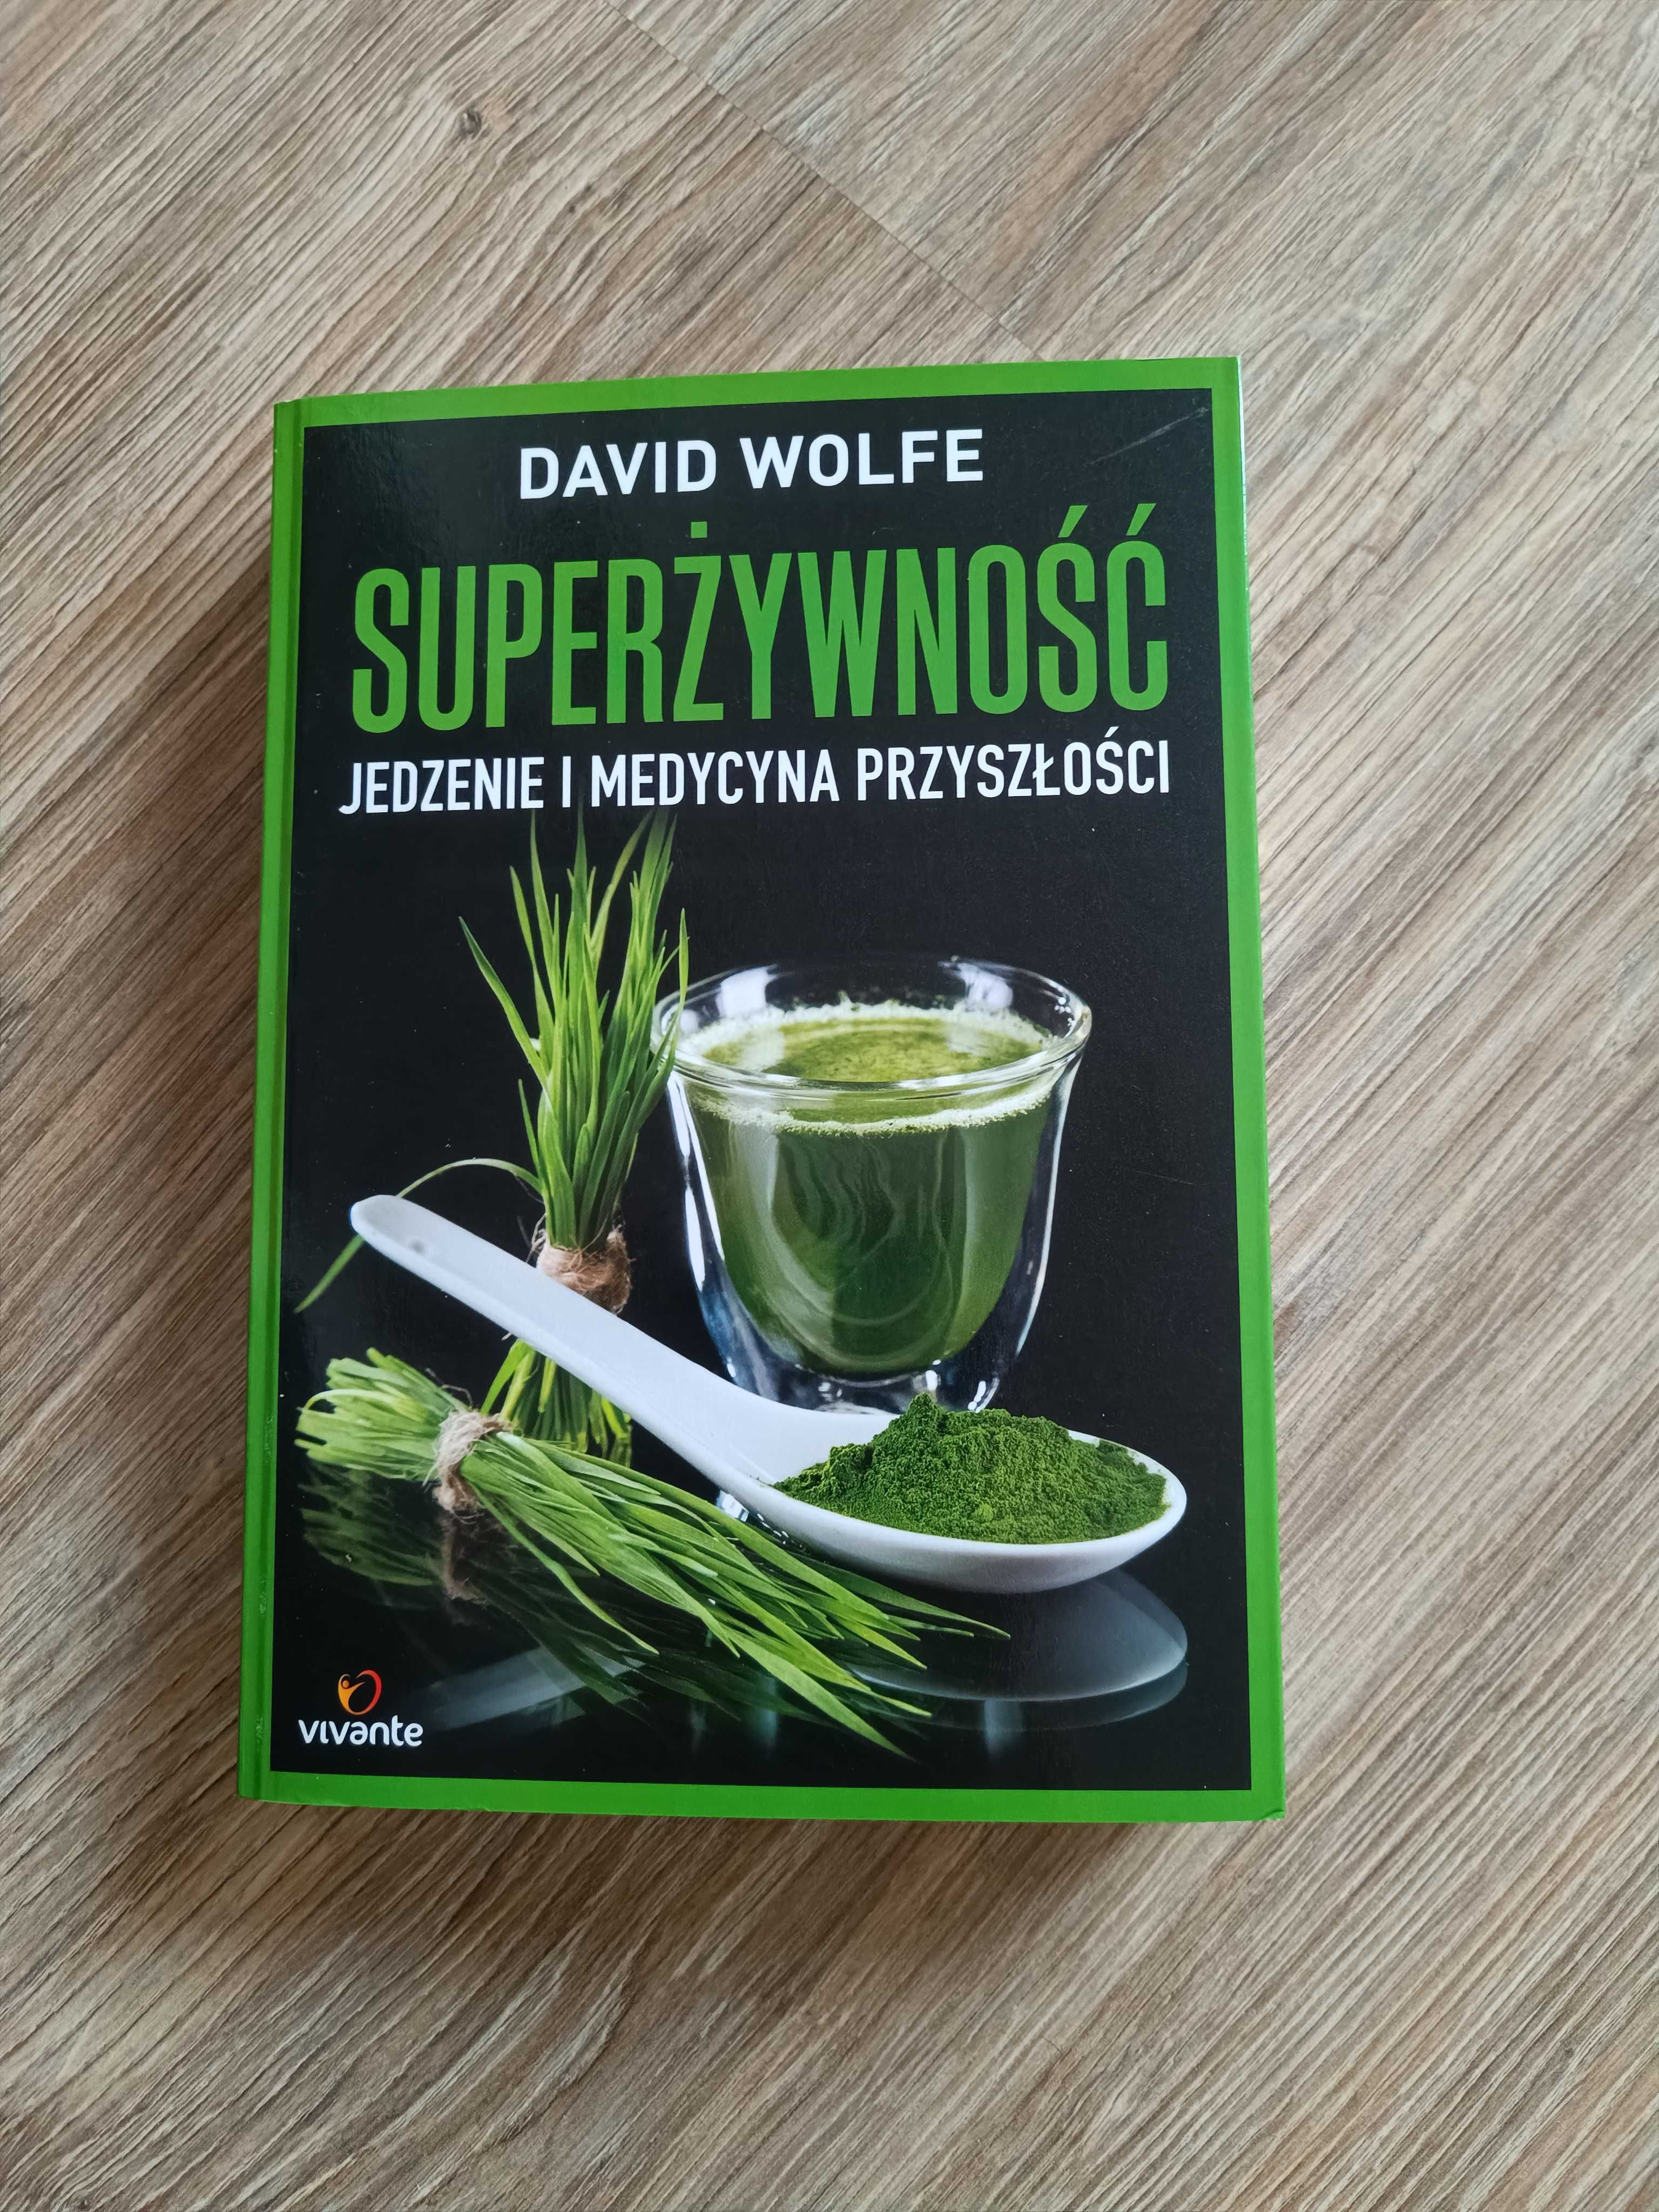 "Superżywność - jedzenie i medycyna przyszłości" - autor David Wolfe